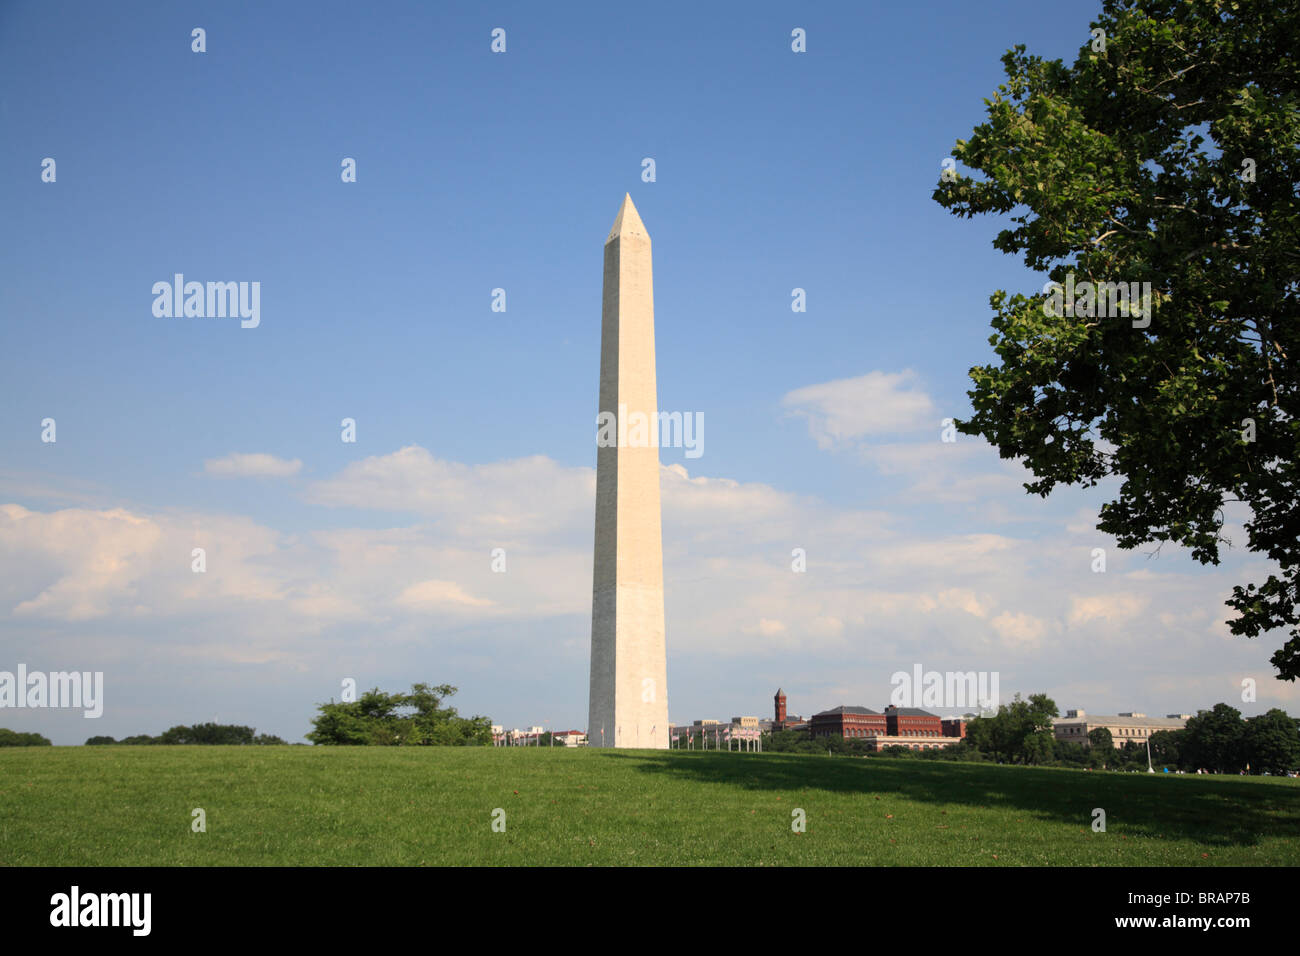 Washington Monument, Washington D.C., United States of America, North America Stock Photo